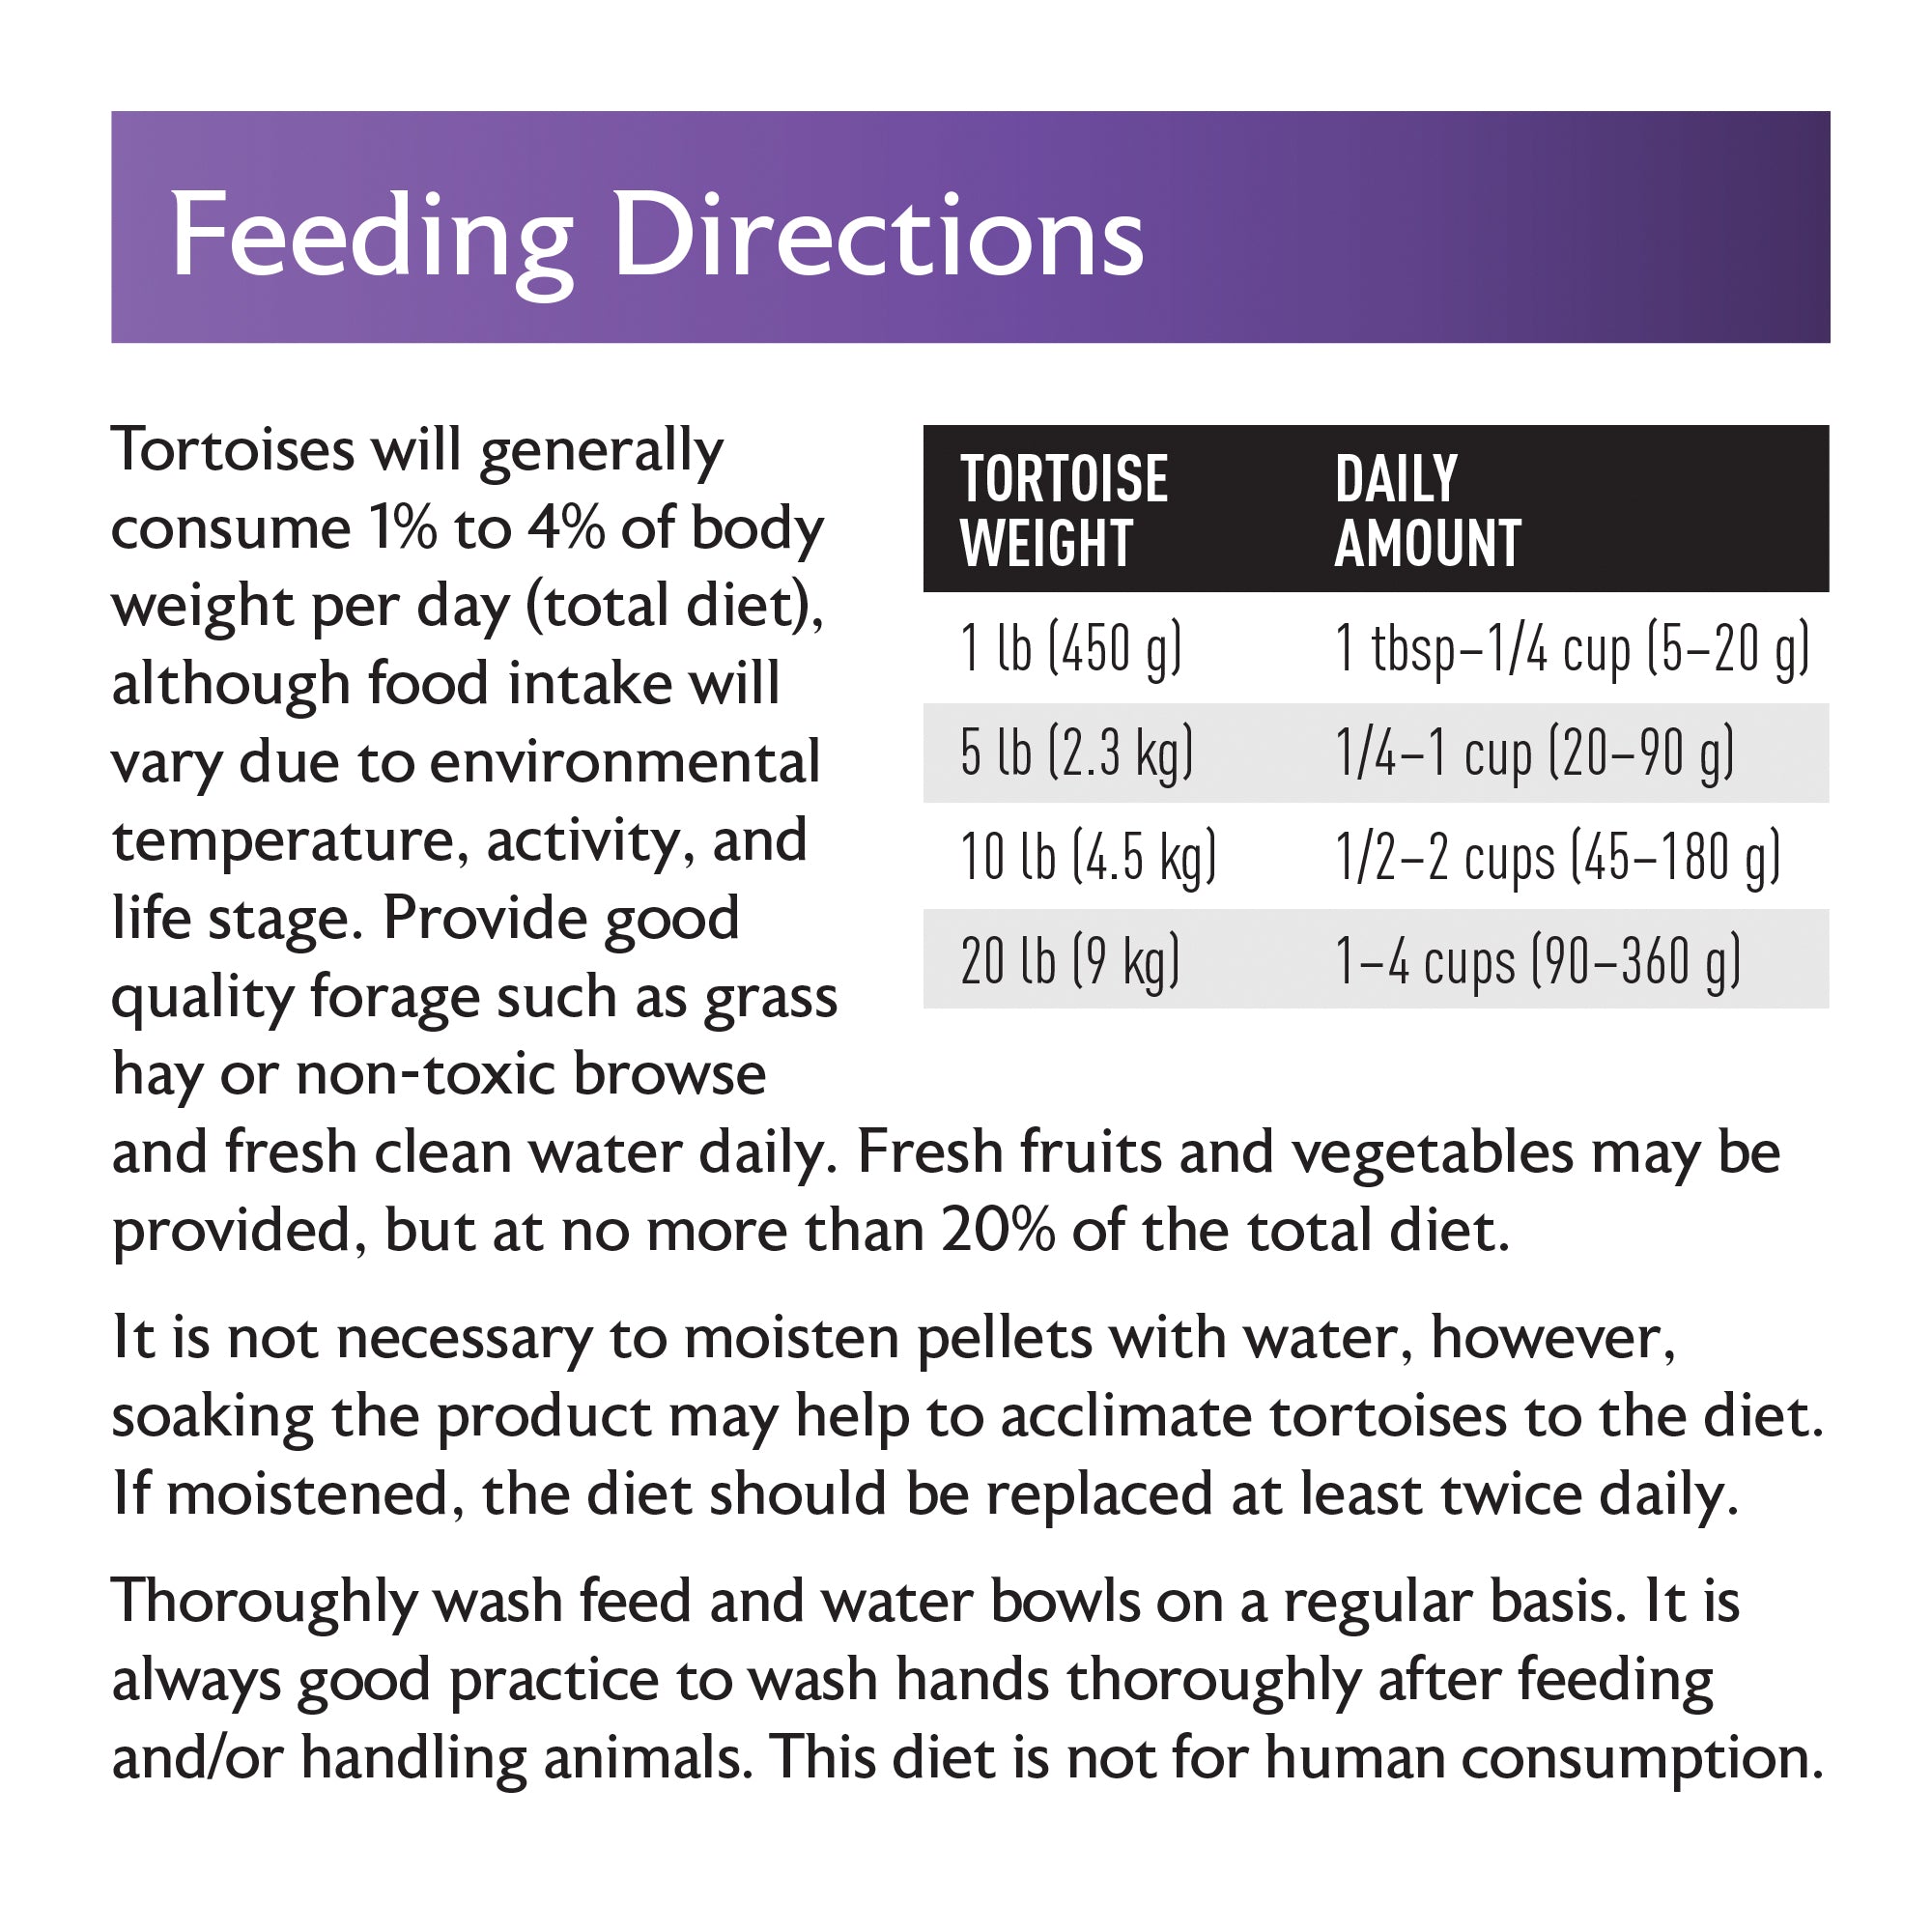 Mazuri tortoise diet feeding directions